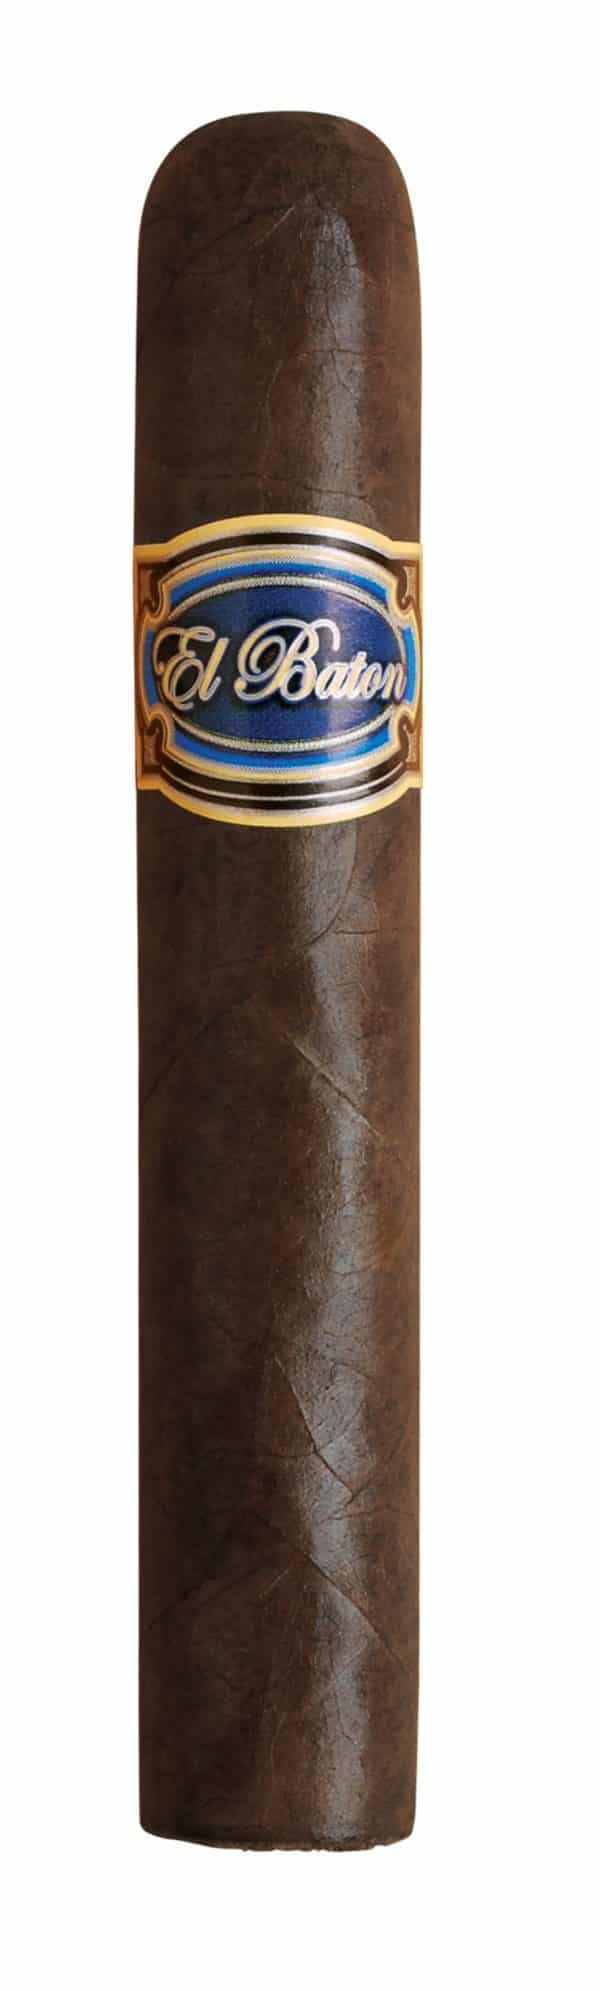 Single El Baton Robusto cigar